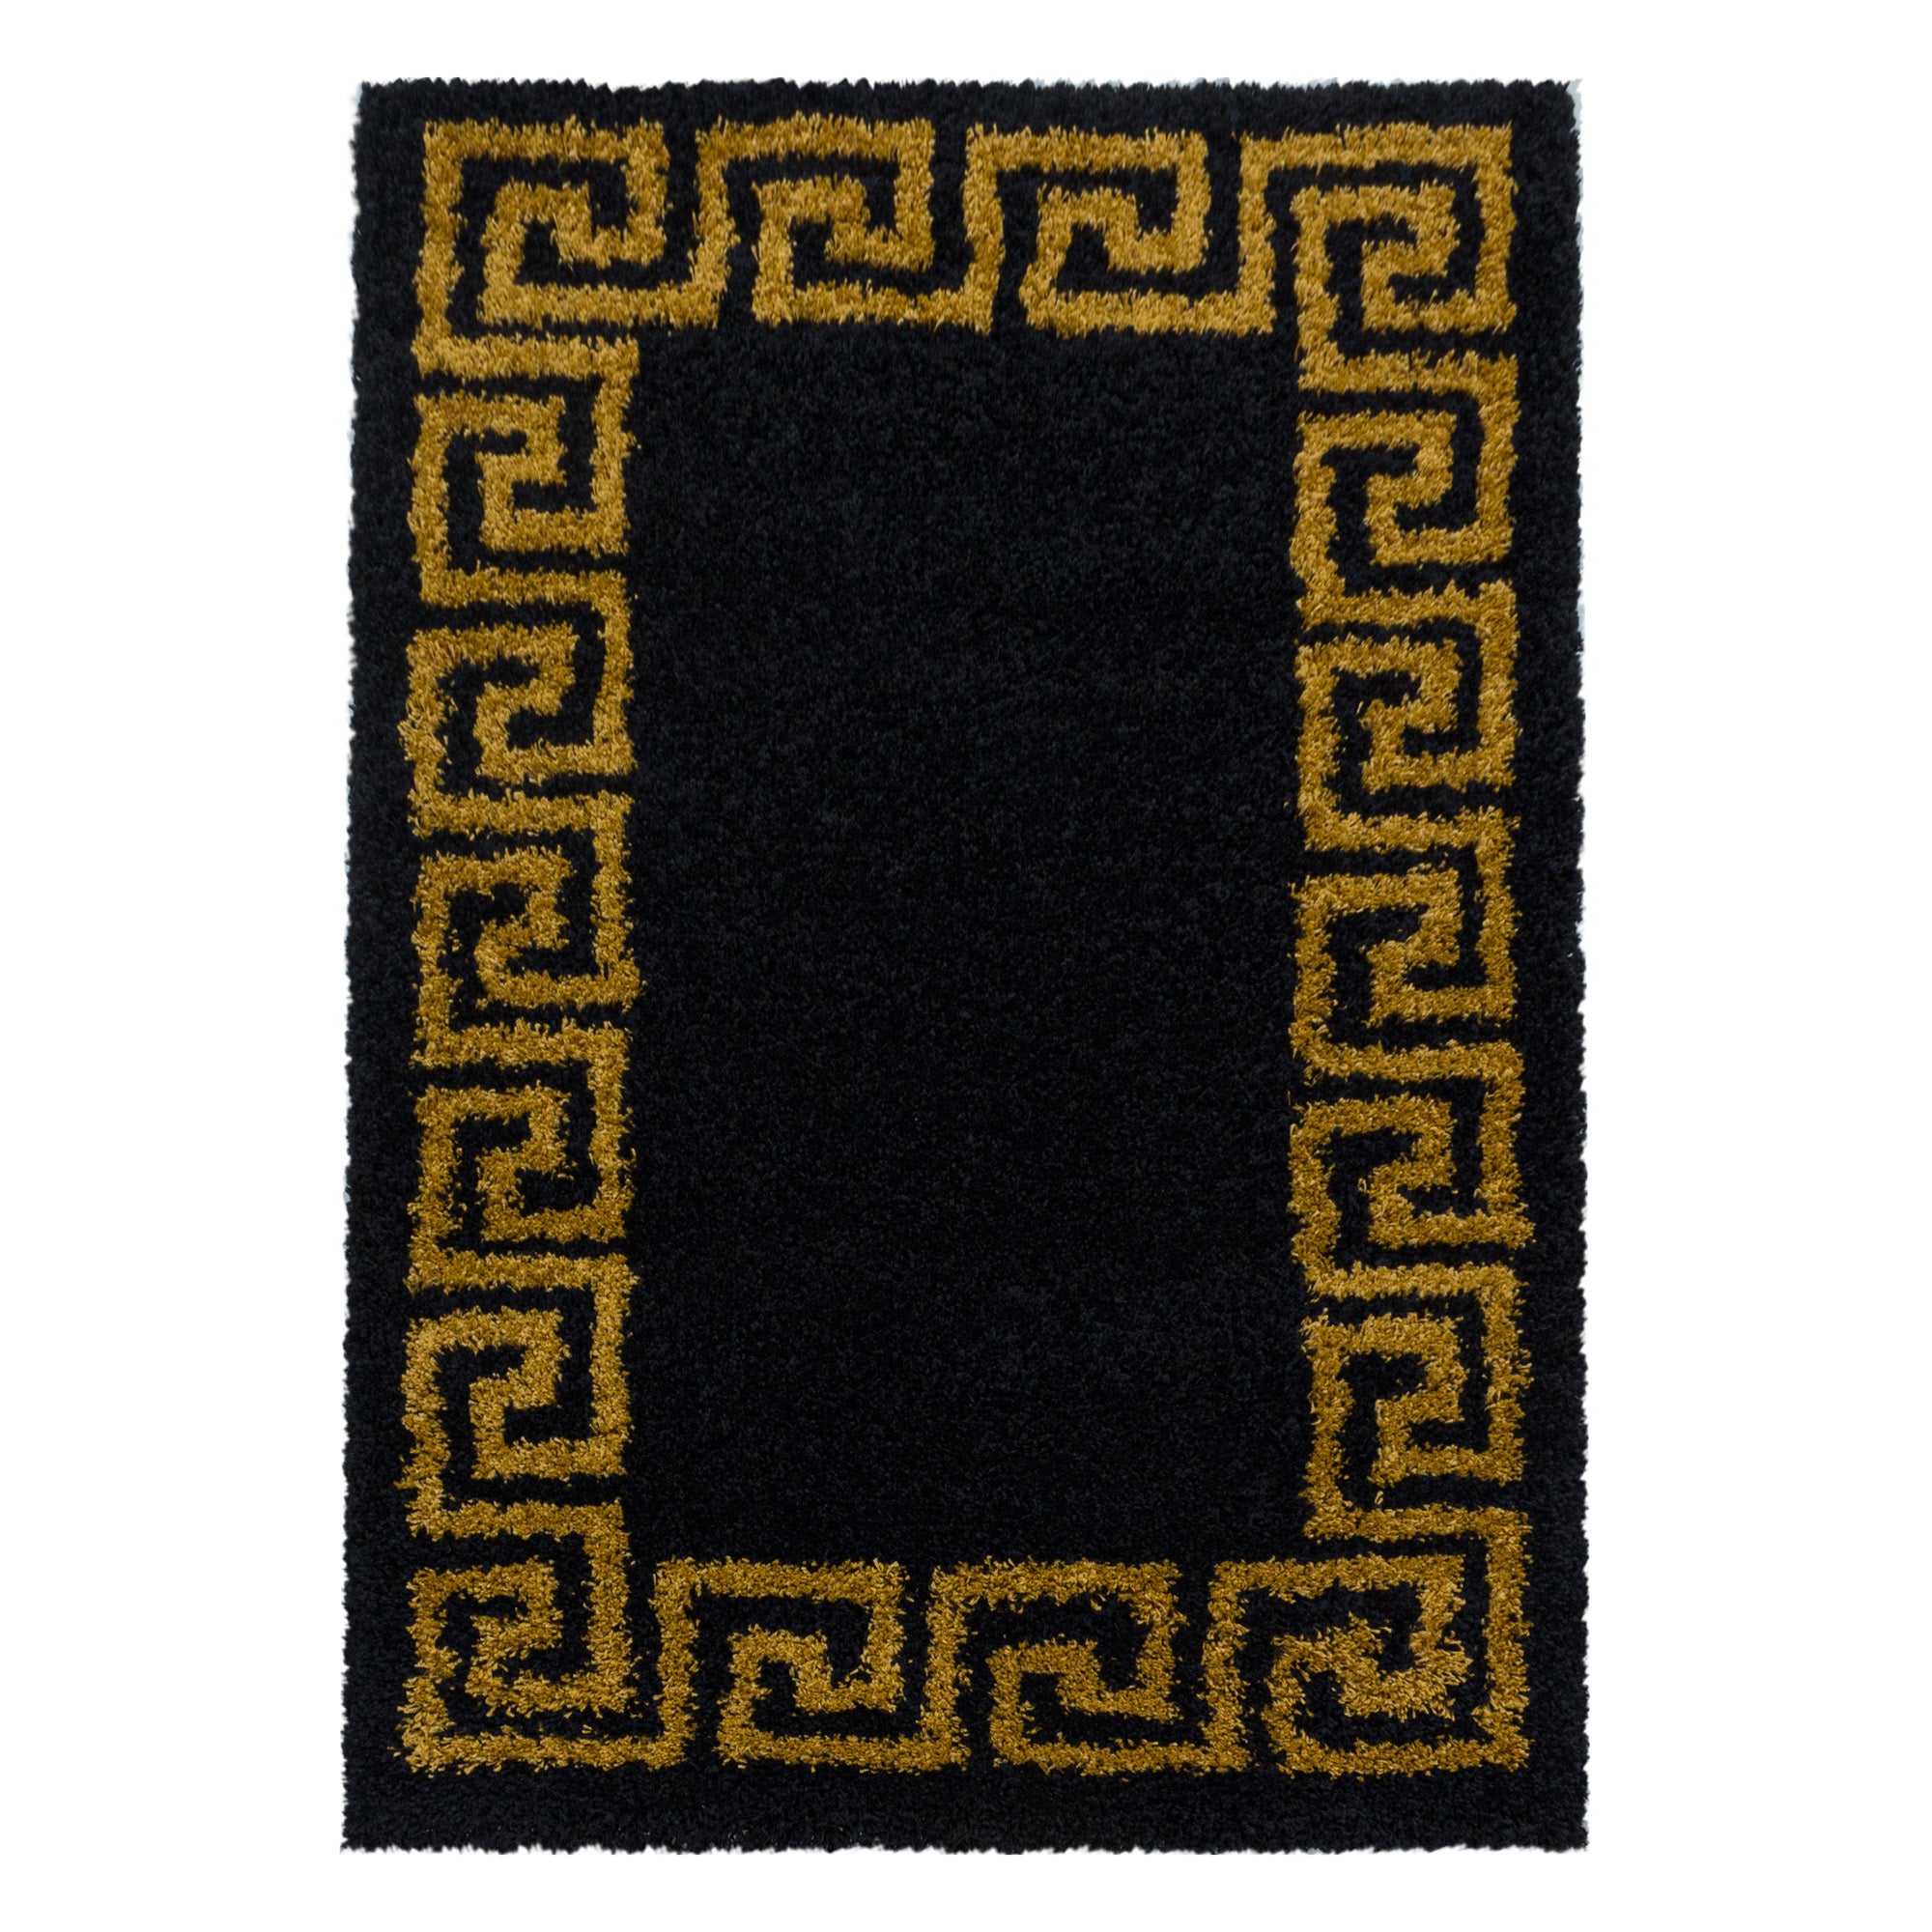 Design Hochflor Teppich Wohnzimmerteppich Muster Antike Bordüre Farbe Gold